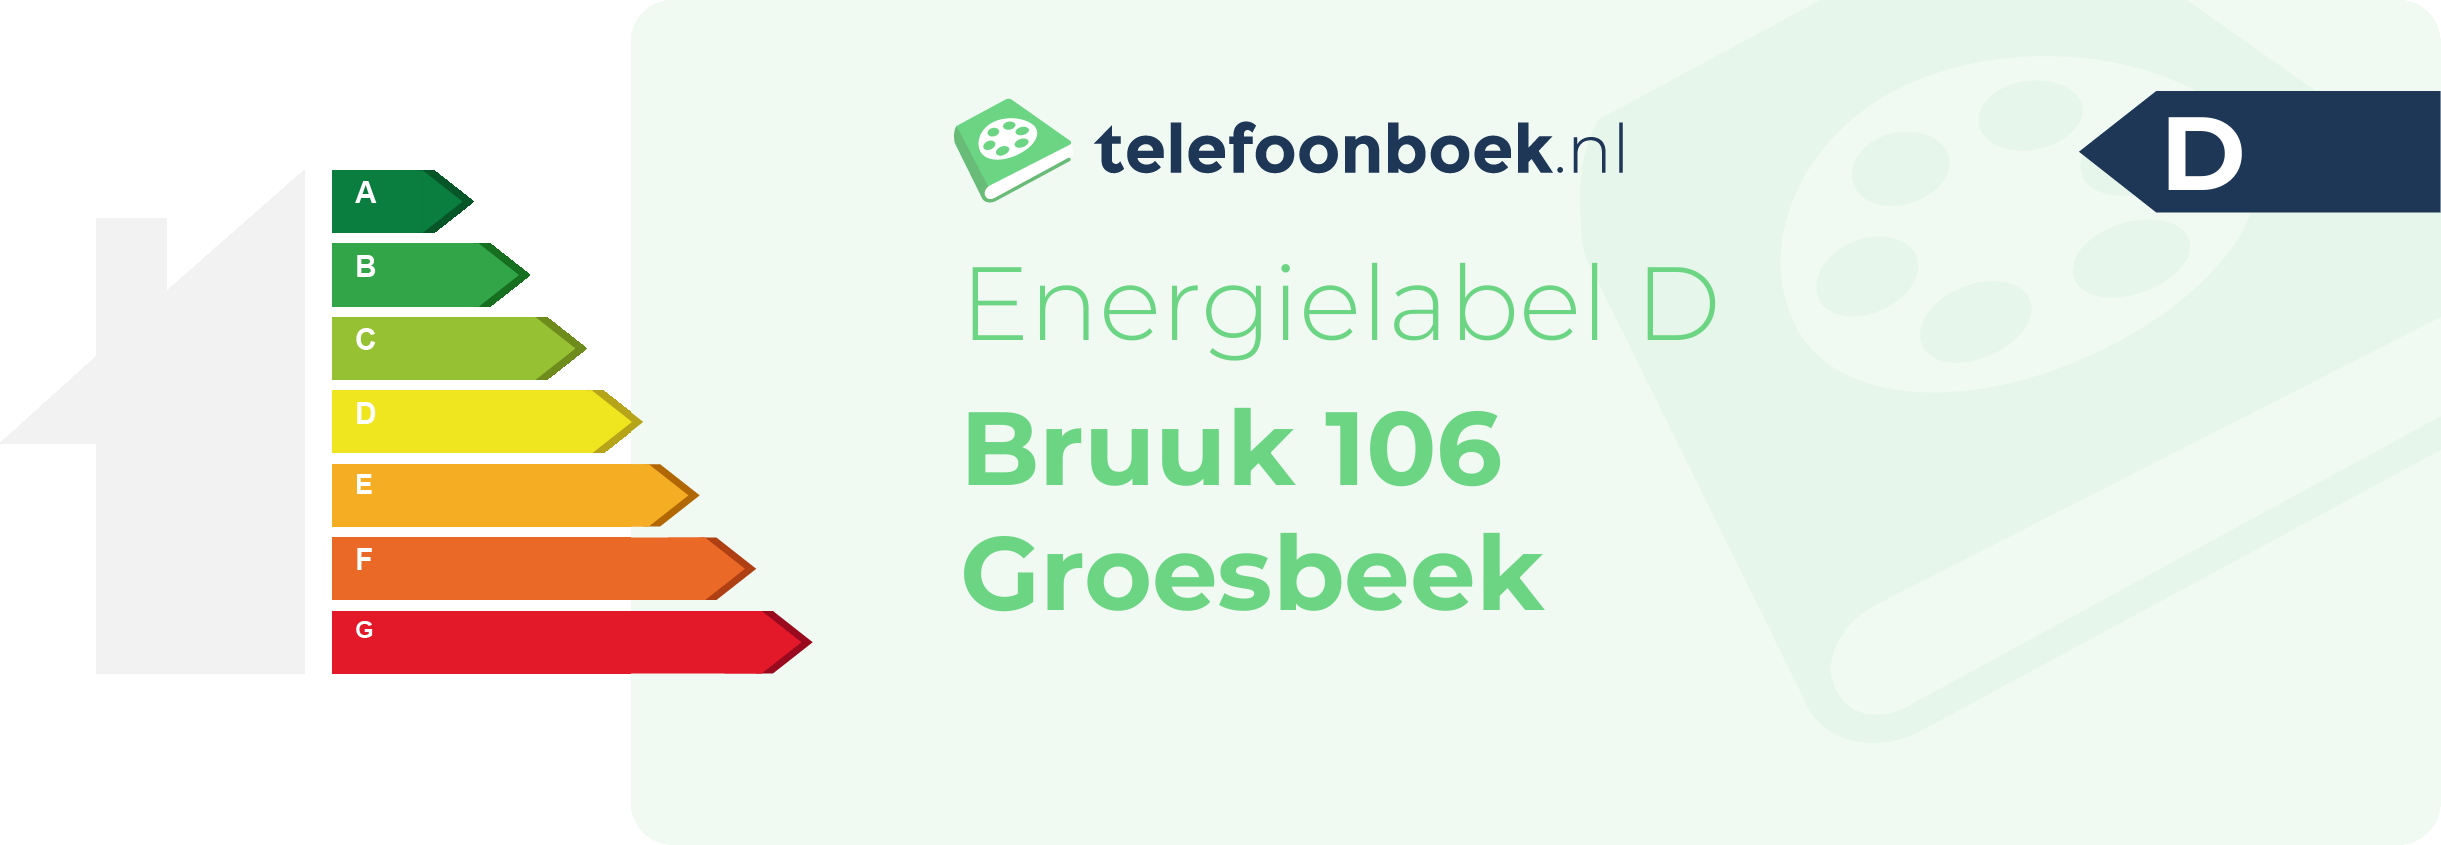 Energielabel Bruuk 106 Groesbeek